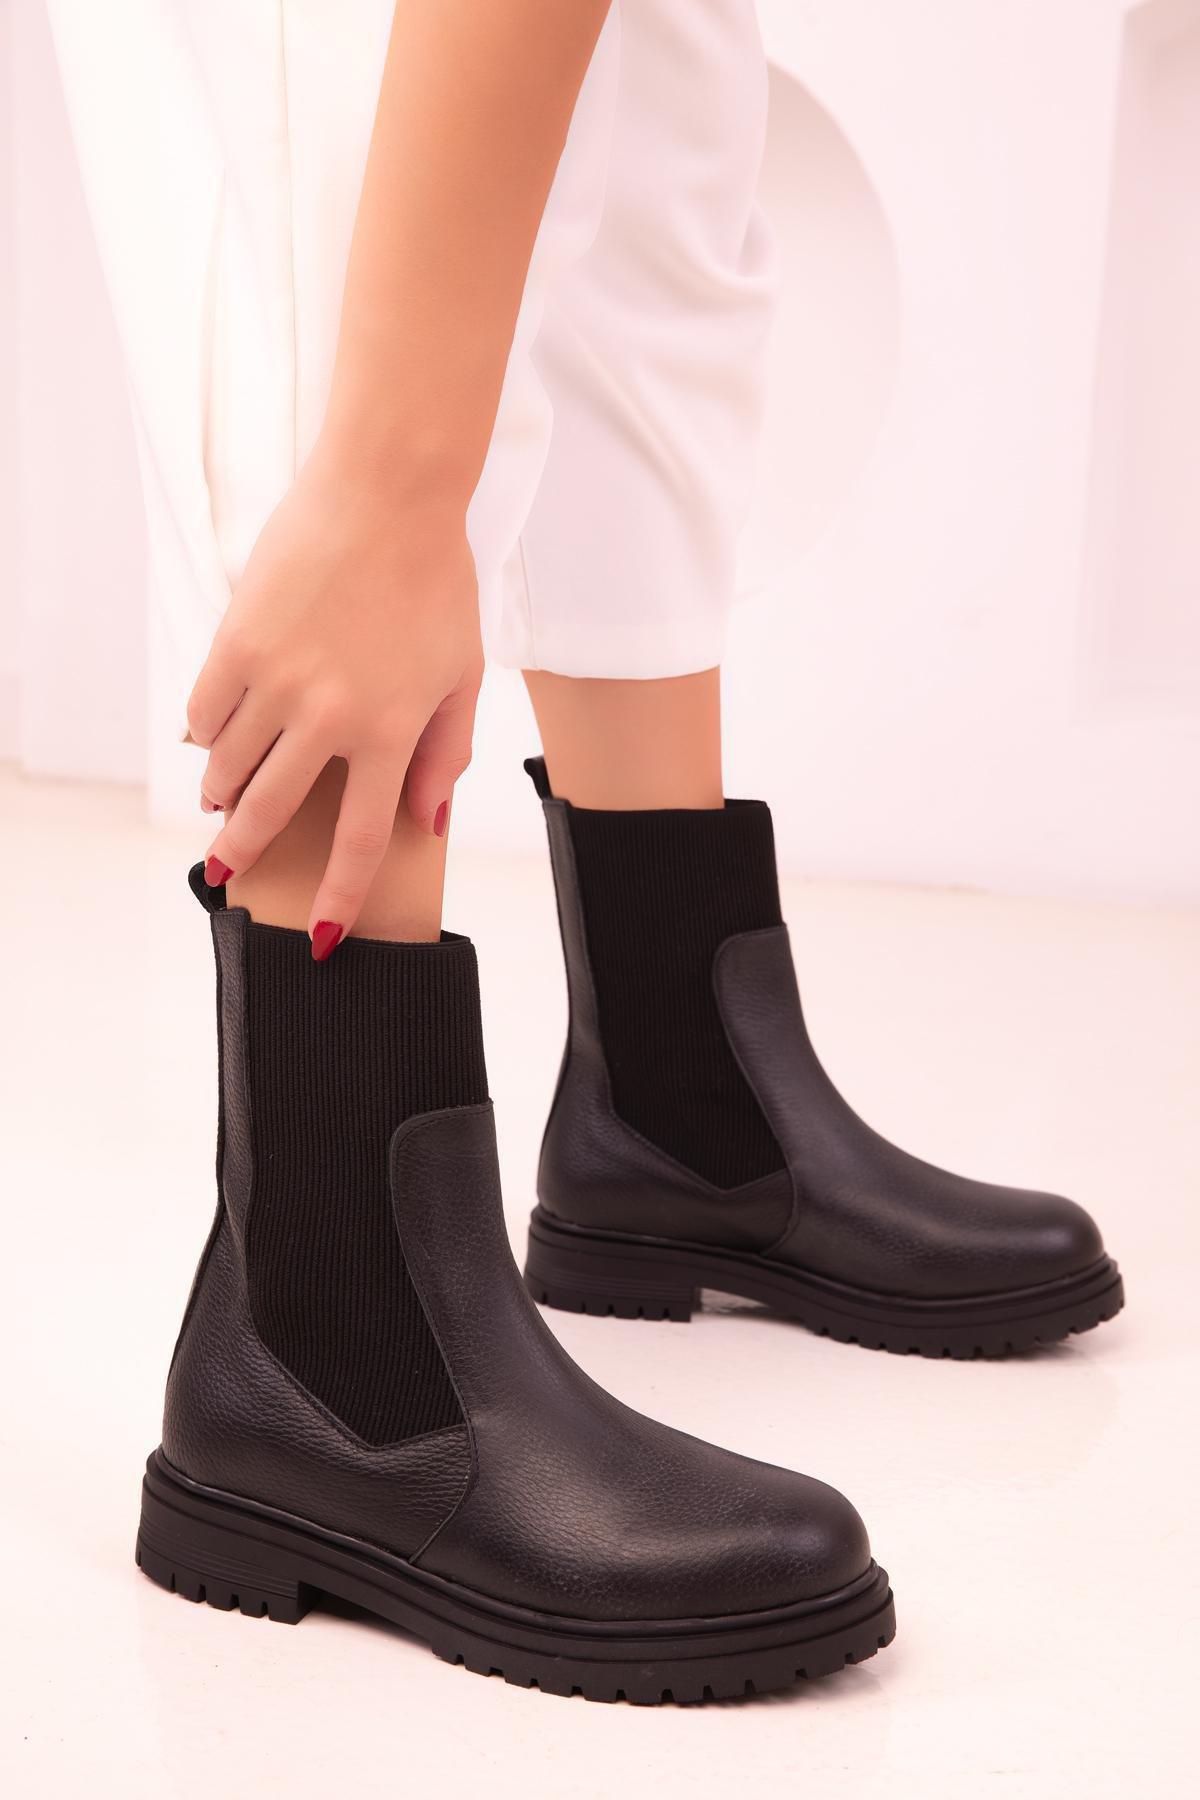 SOHO - Black Leather Boots